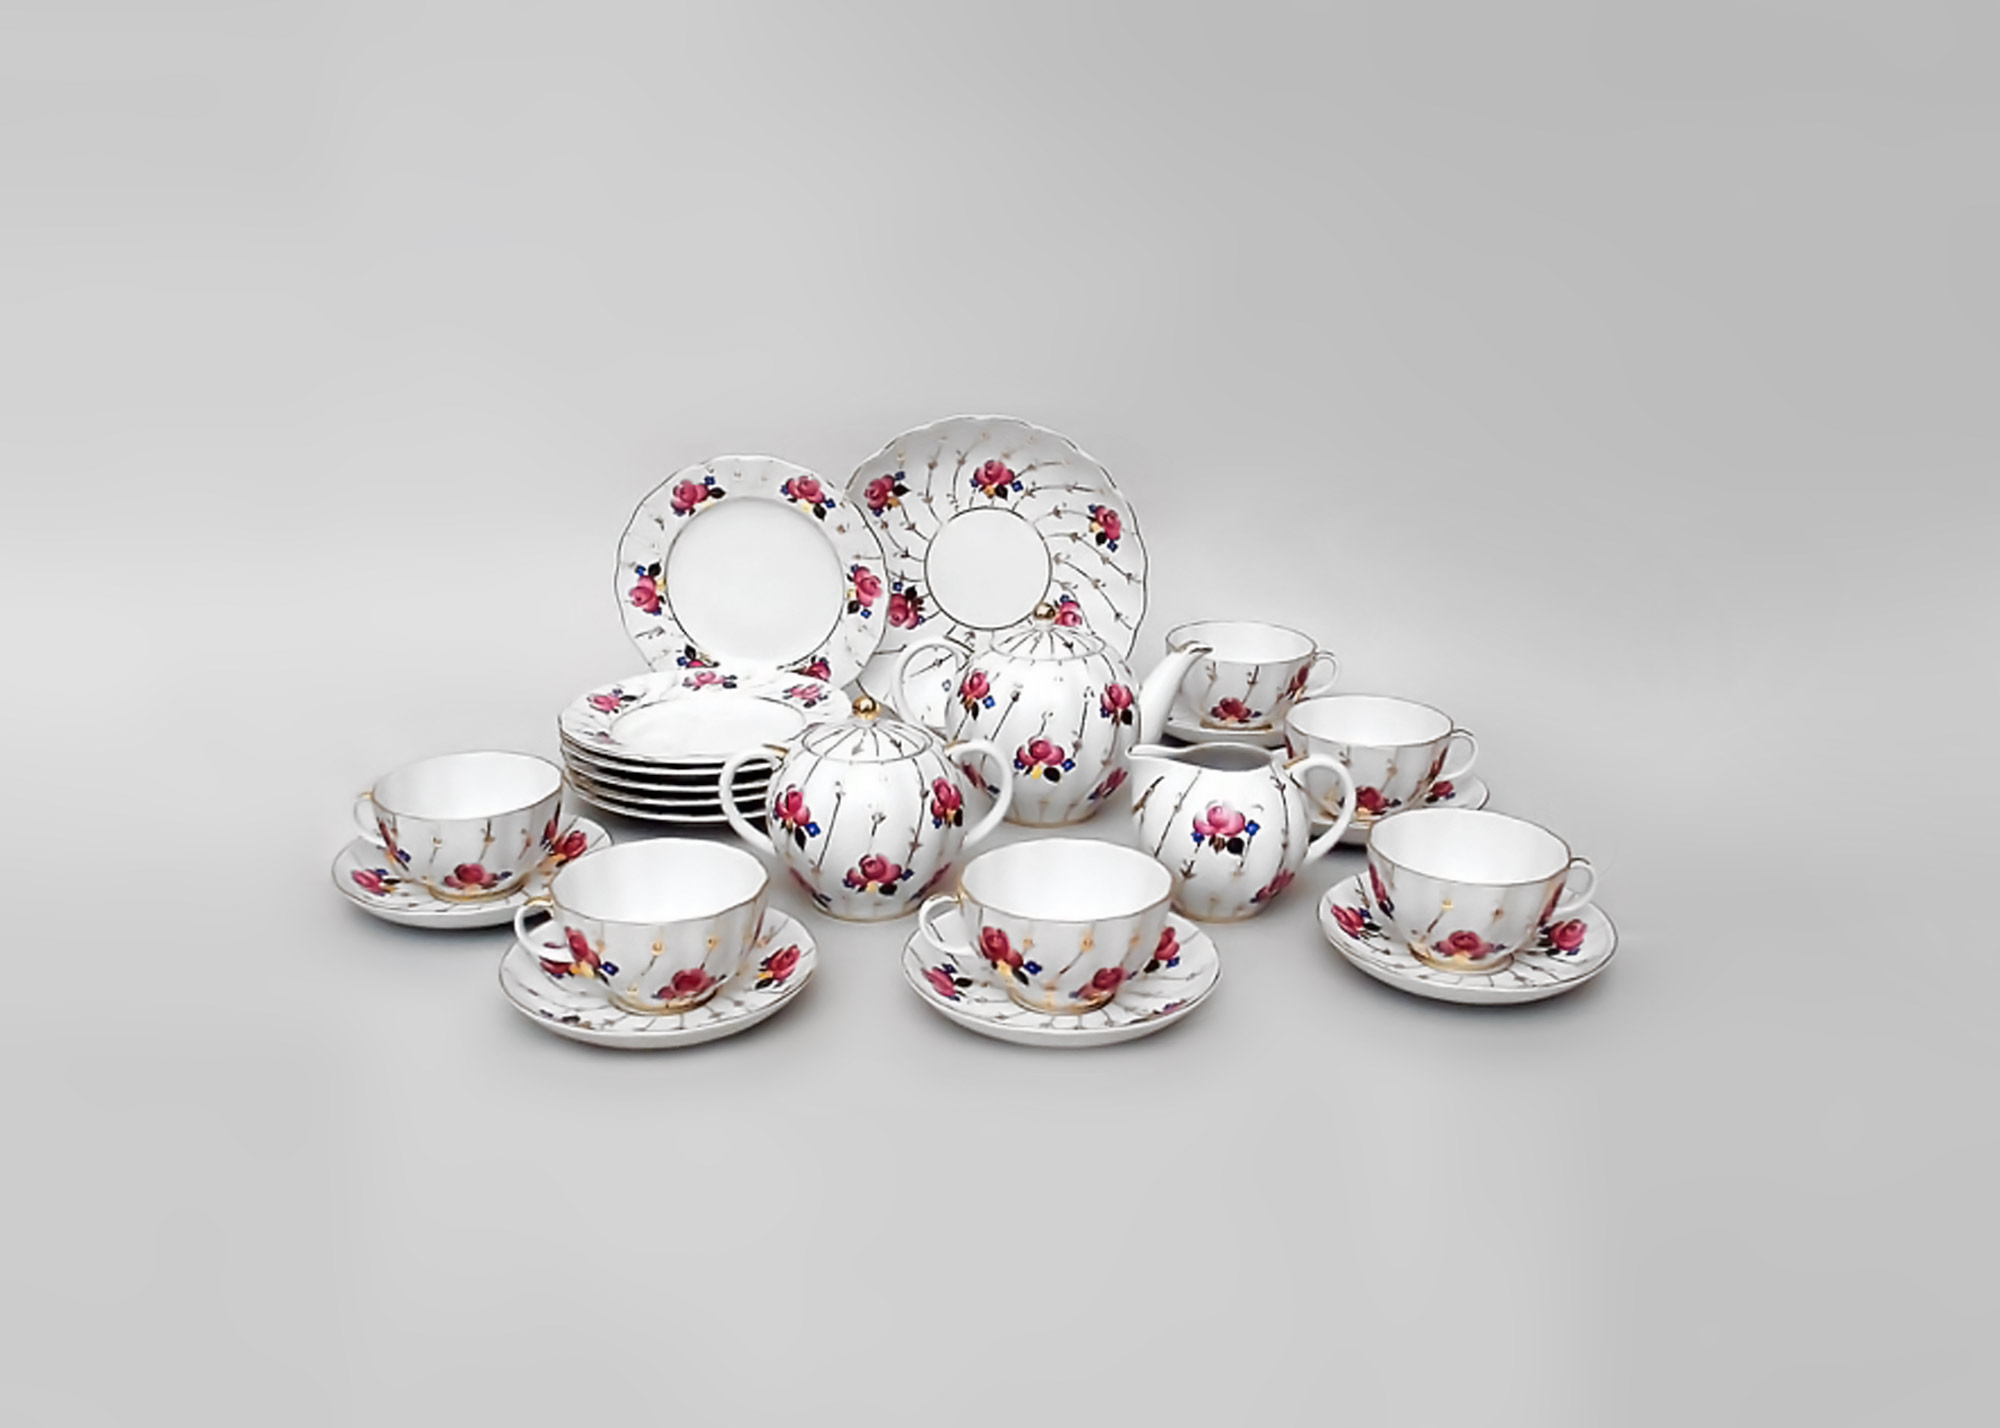 Buy Antique Roses Tea Set, 22 pcs at GoldenCockerel.com